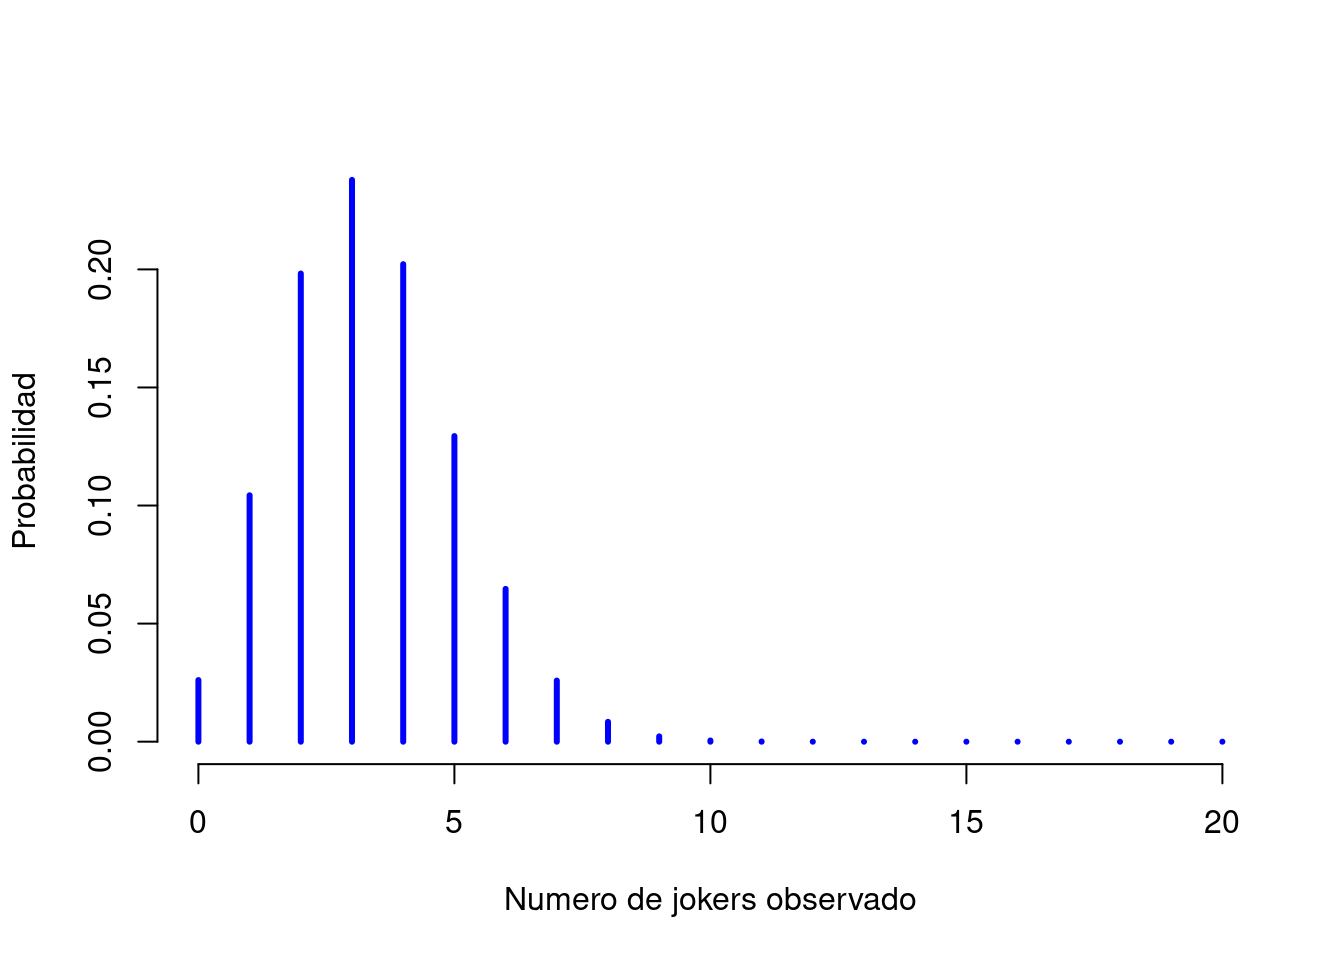 La distribución binomial con parámetro de tamaño de $N=20$ y una probabilidad de éxito subyacente de $theta=1/6$. Cada barra vertical representa la probabilidad de un resultado específico (es decir, un valor posible de $X$). Debido a que esta es una distribución de probabilidad, cada una de las probabilidades debe ser un número entre 0 y 1, y las alturas de las barras también deben sumar 1.